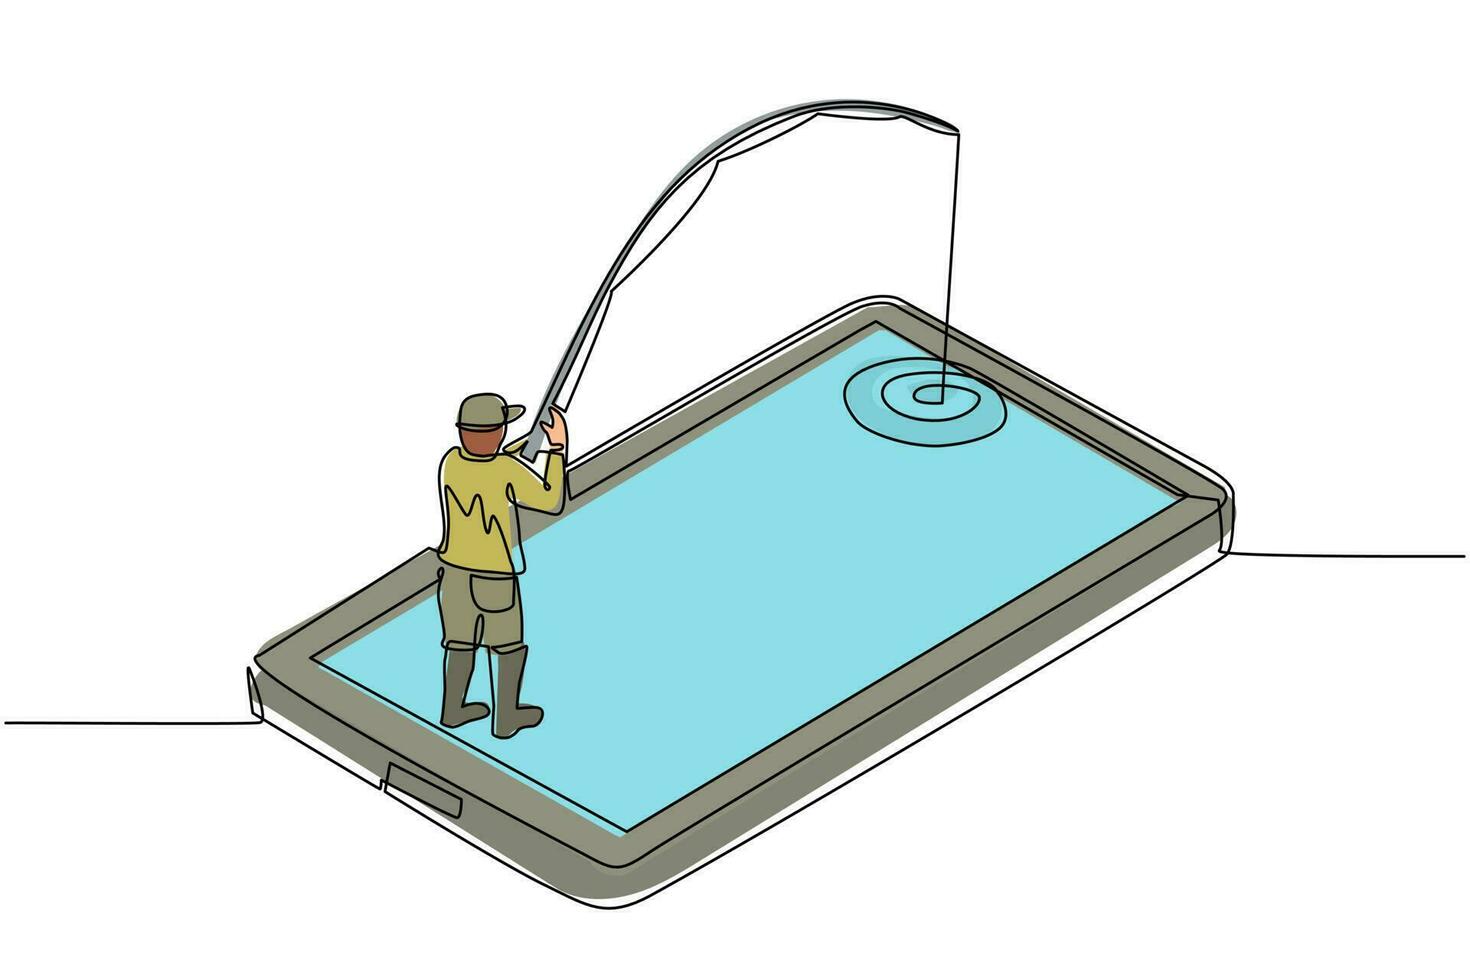 enkele een lijntekening jonge man vissen op smartphone scherm. man staande op mobiele telefoon en vissen met hengel. mobiele app voor vissers. moderne doorlopende lijn tekenen ontwerp grafische vectorillustratie vector